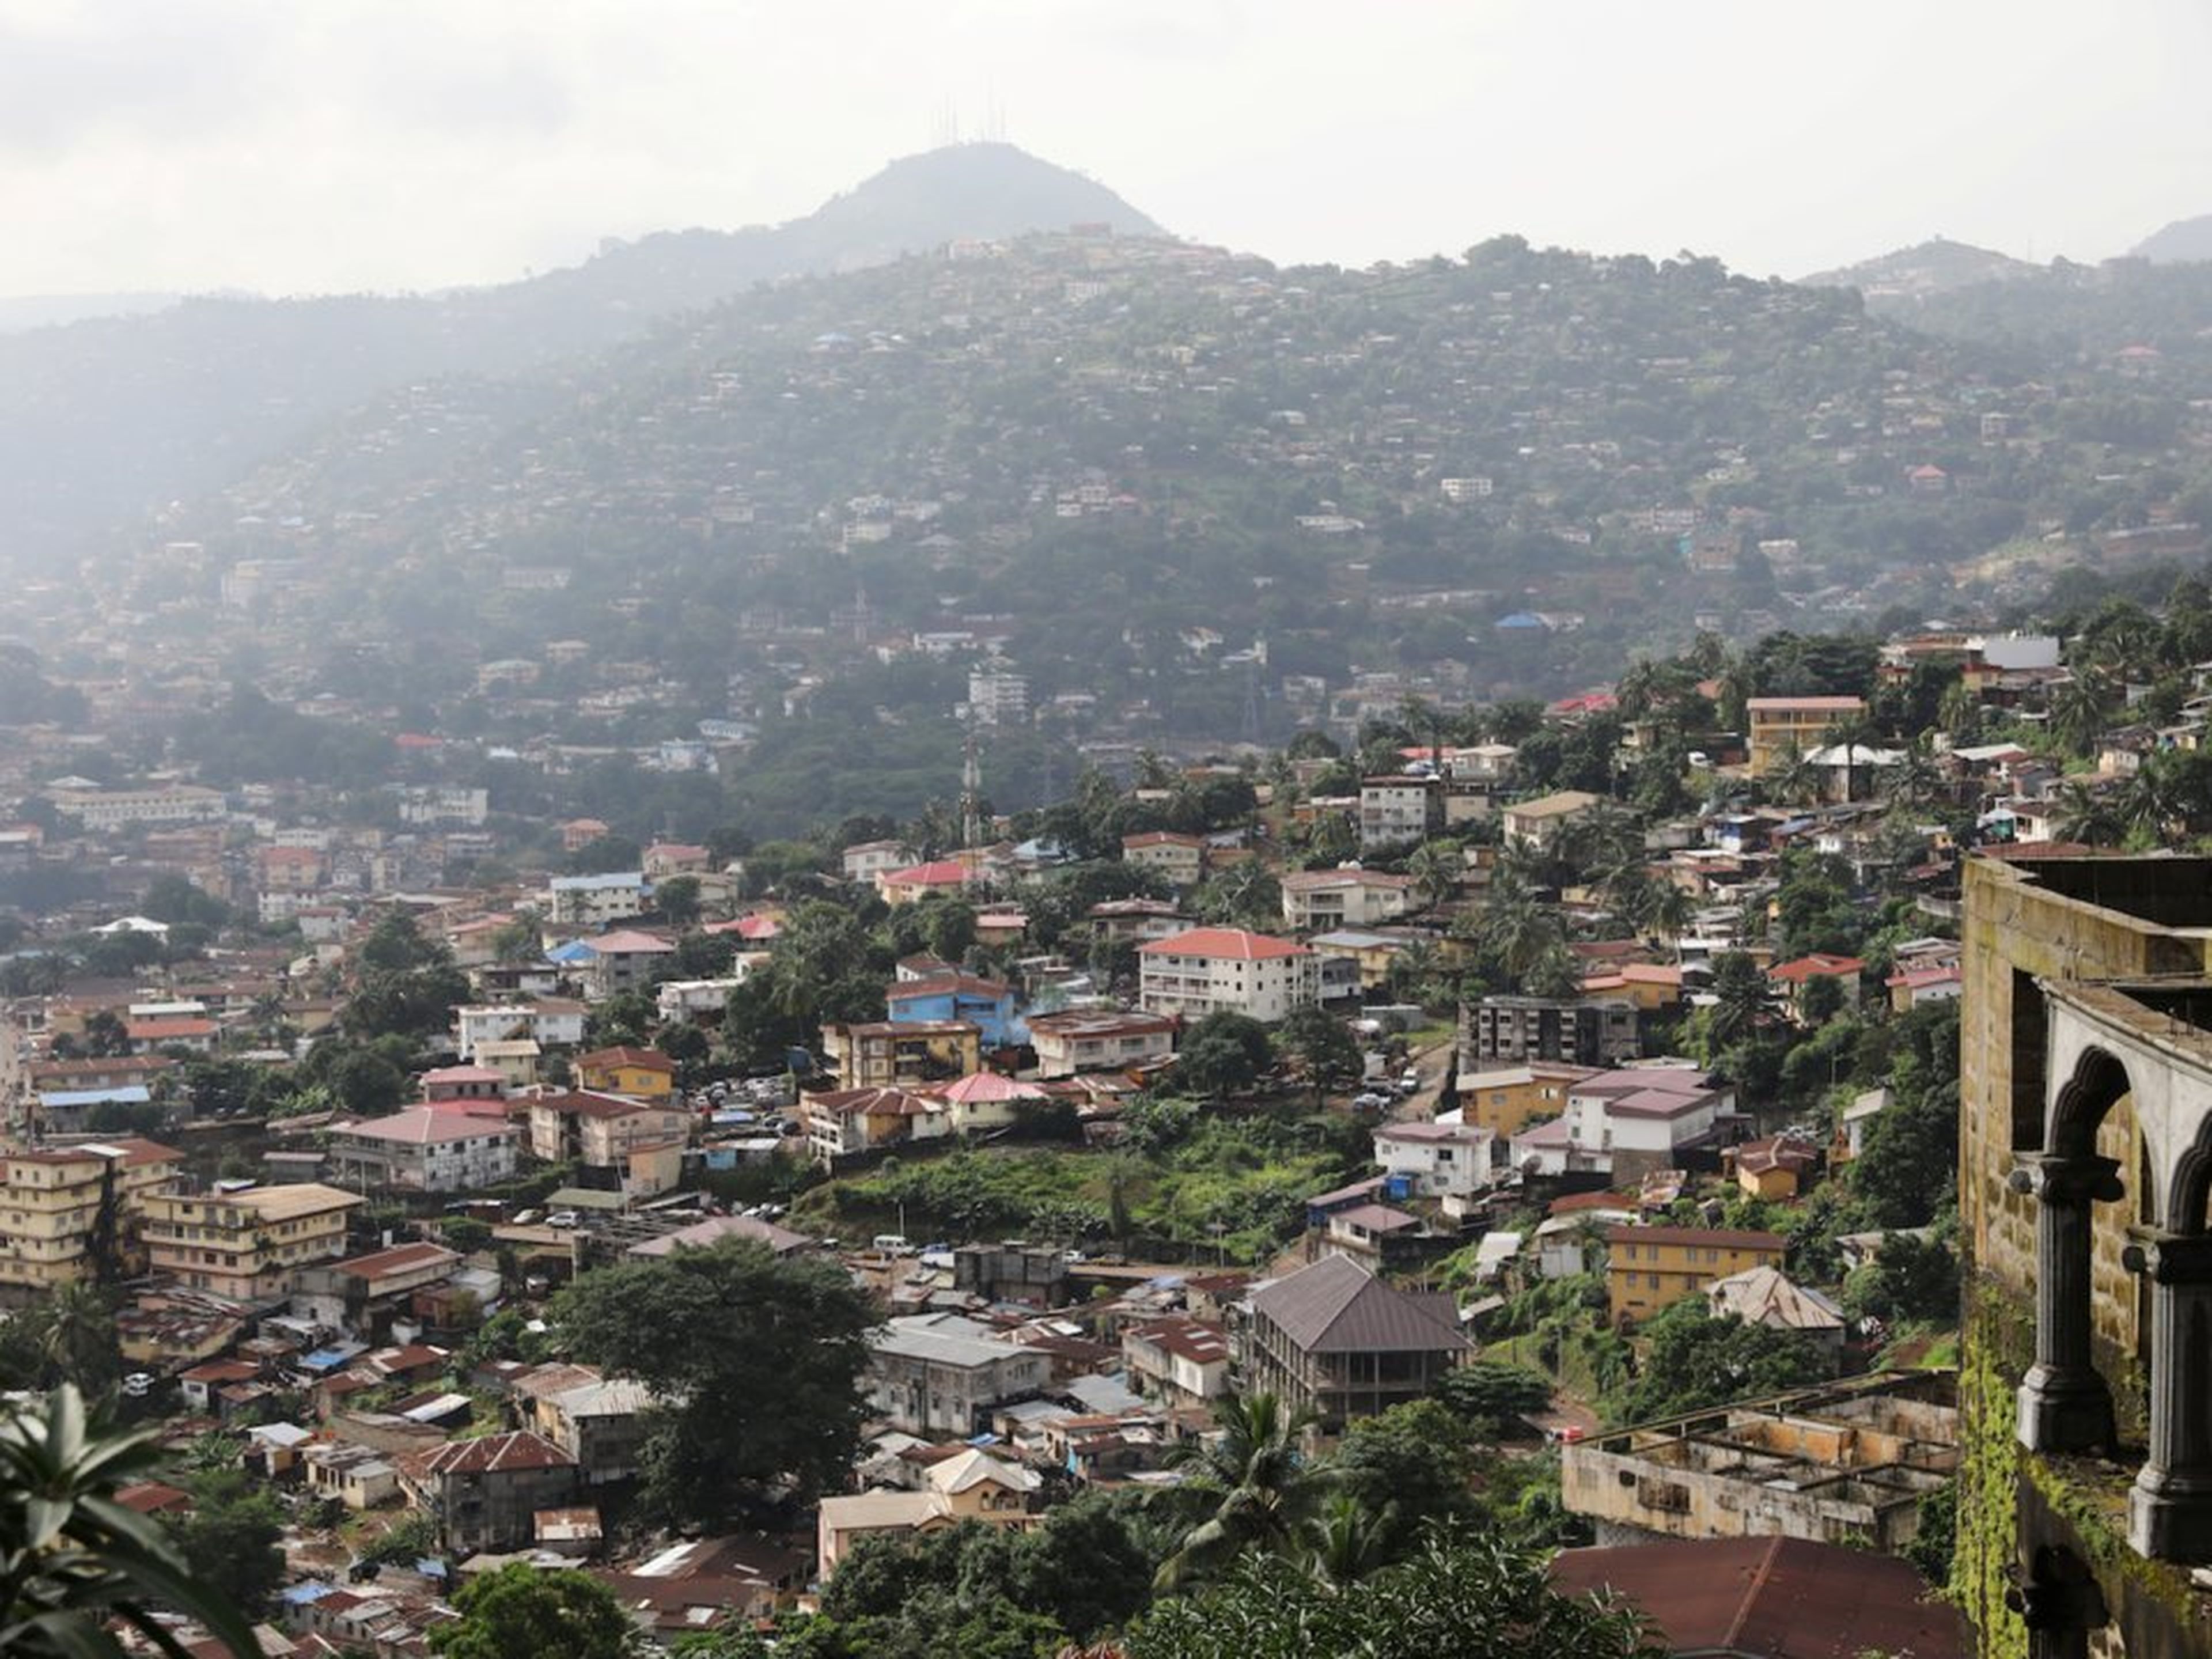 Vista general del centro de la ciudad de Freetown, Sierra Leona.